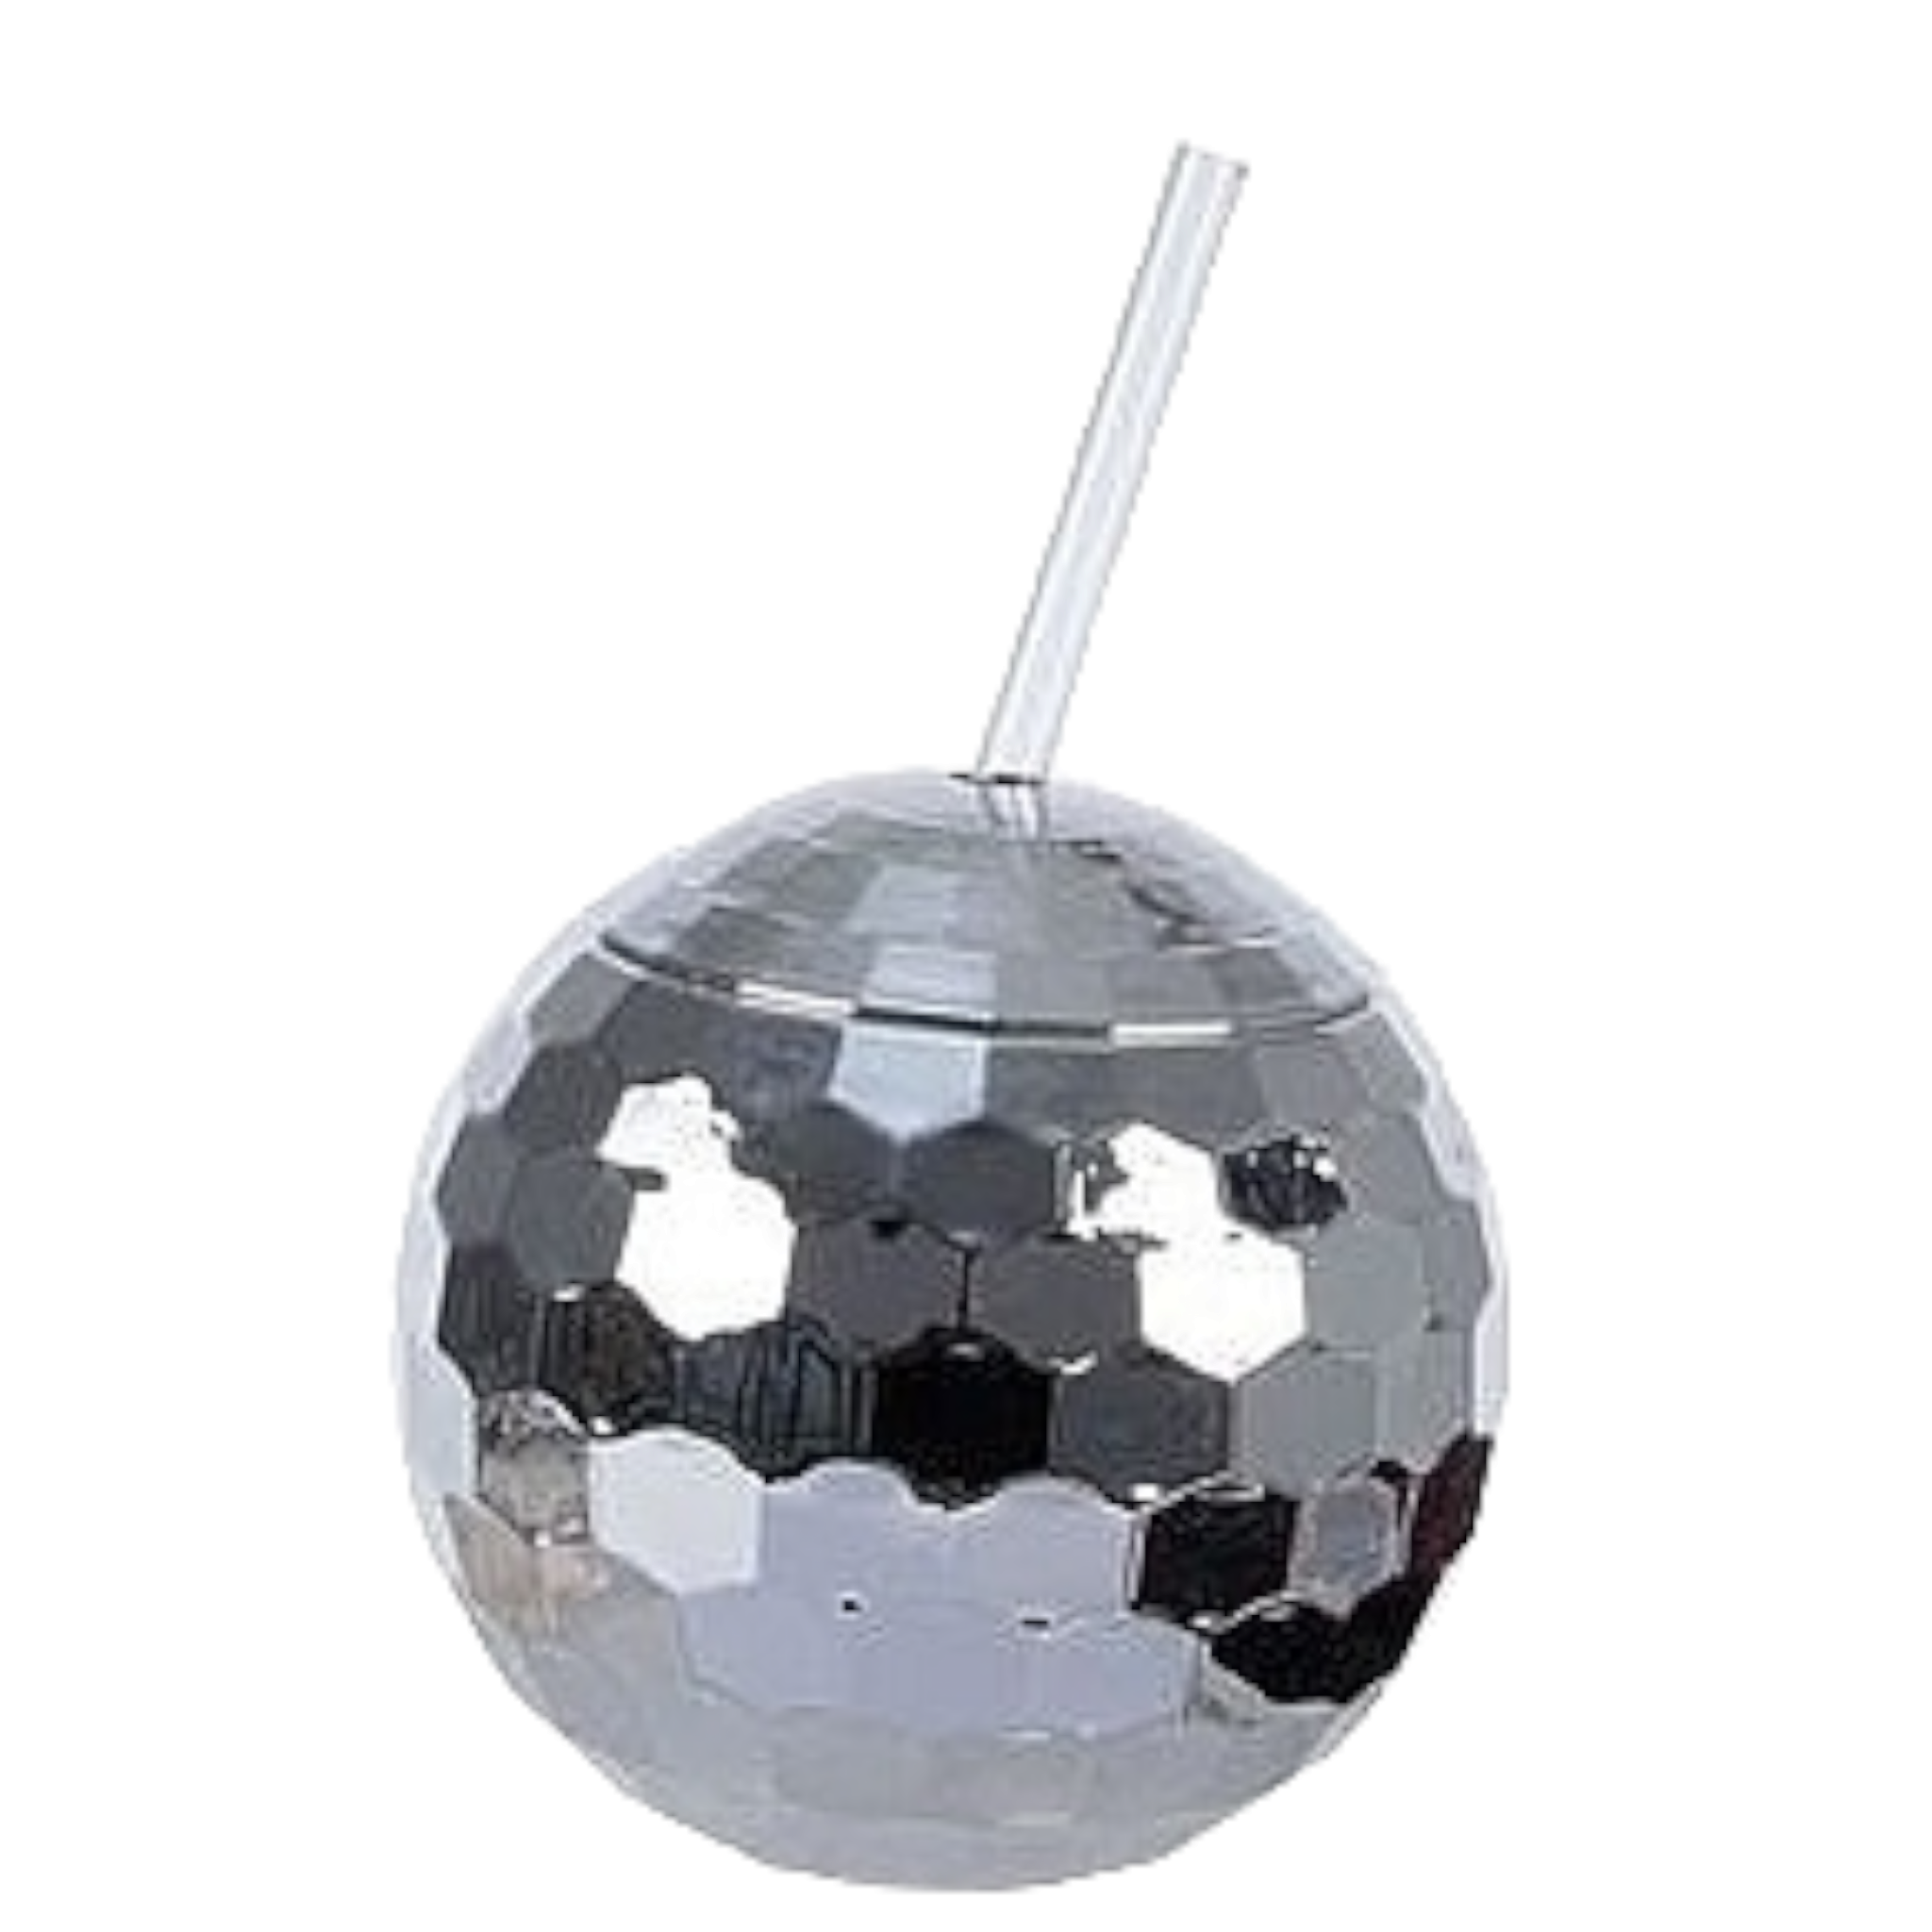 Disco Ball Smoothie Tumbler 550ml with Straw